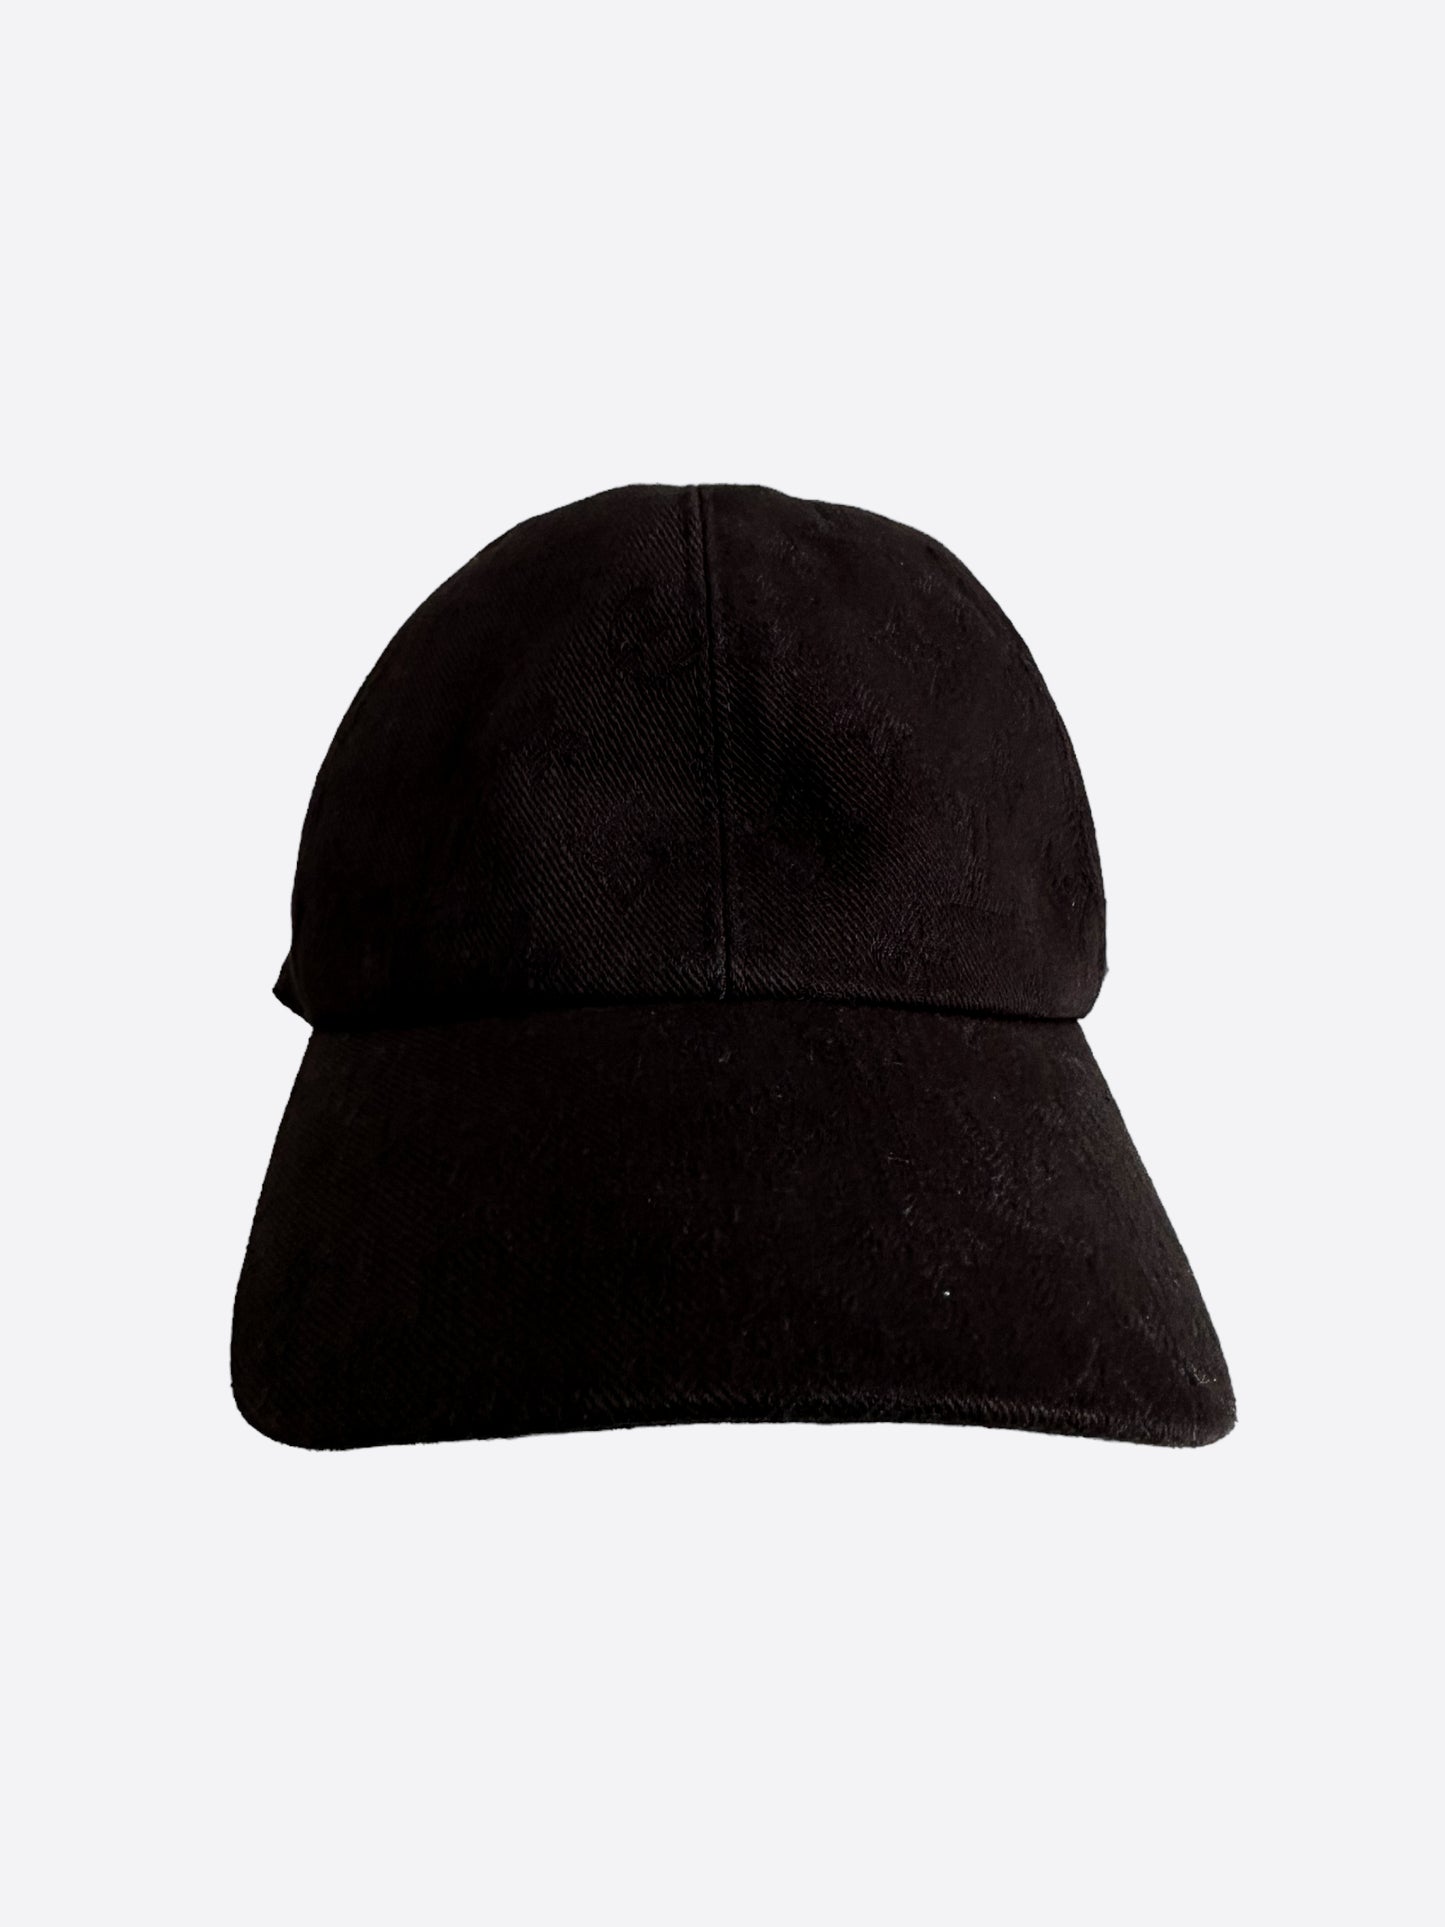 Louis Vuitton Monogram Essential Cap Black Cotton. Size 62